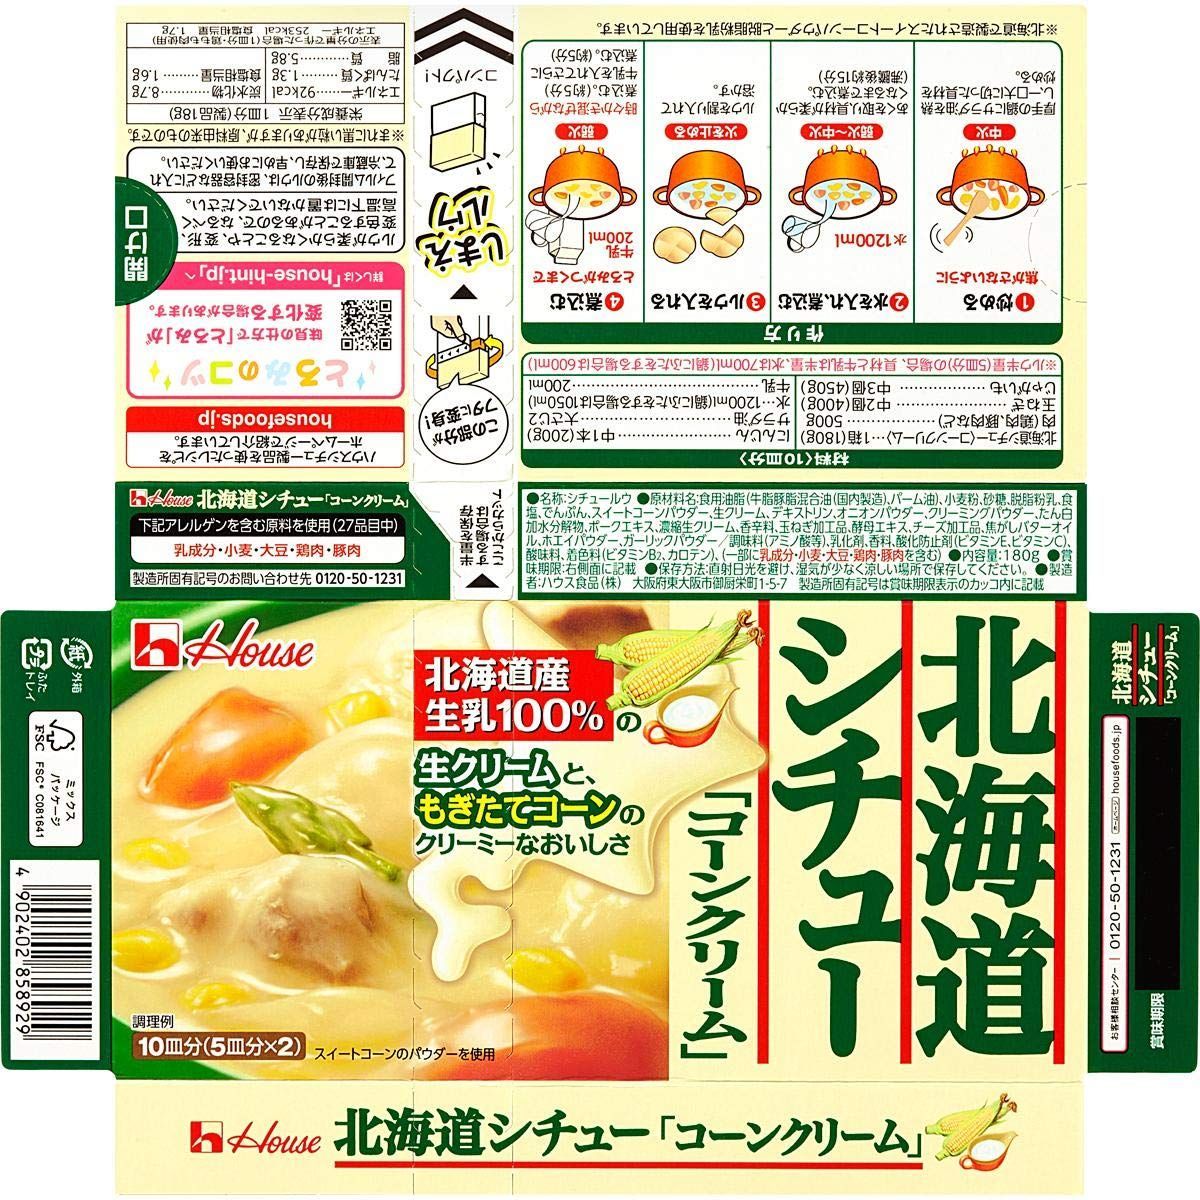 特価商品】180g×3個 北海道シチューコーンクリーム ハウス - NOMAD Shop - メルカリ